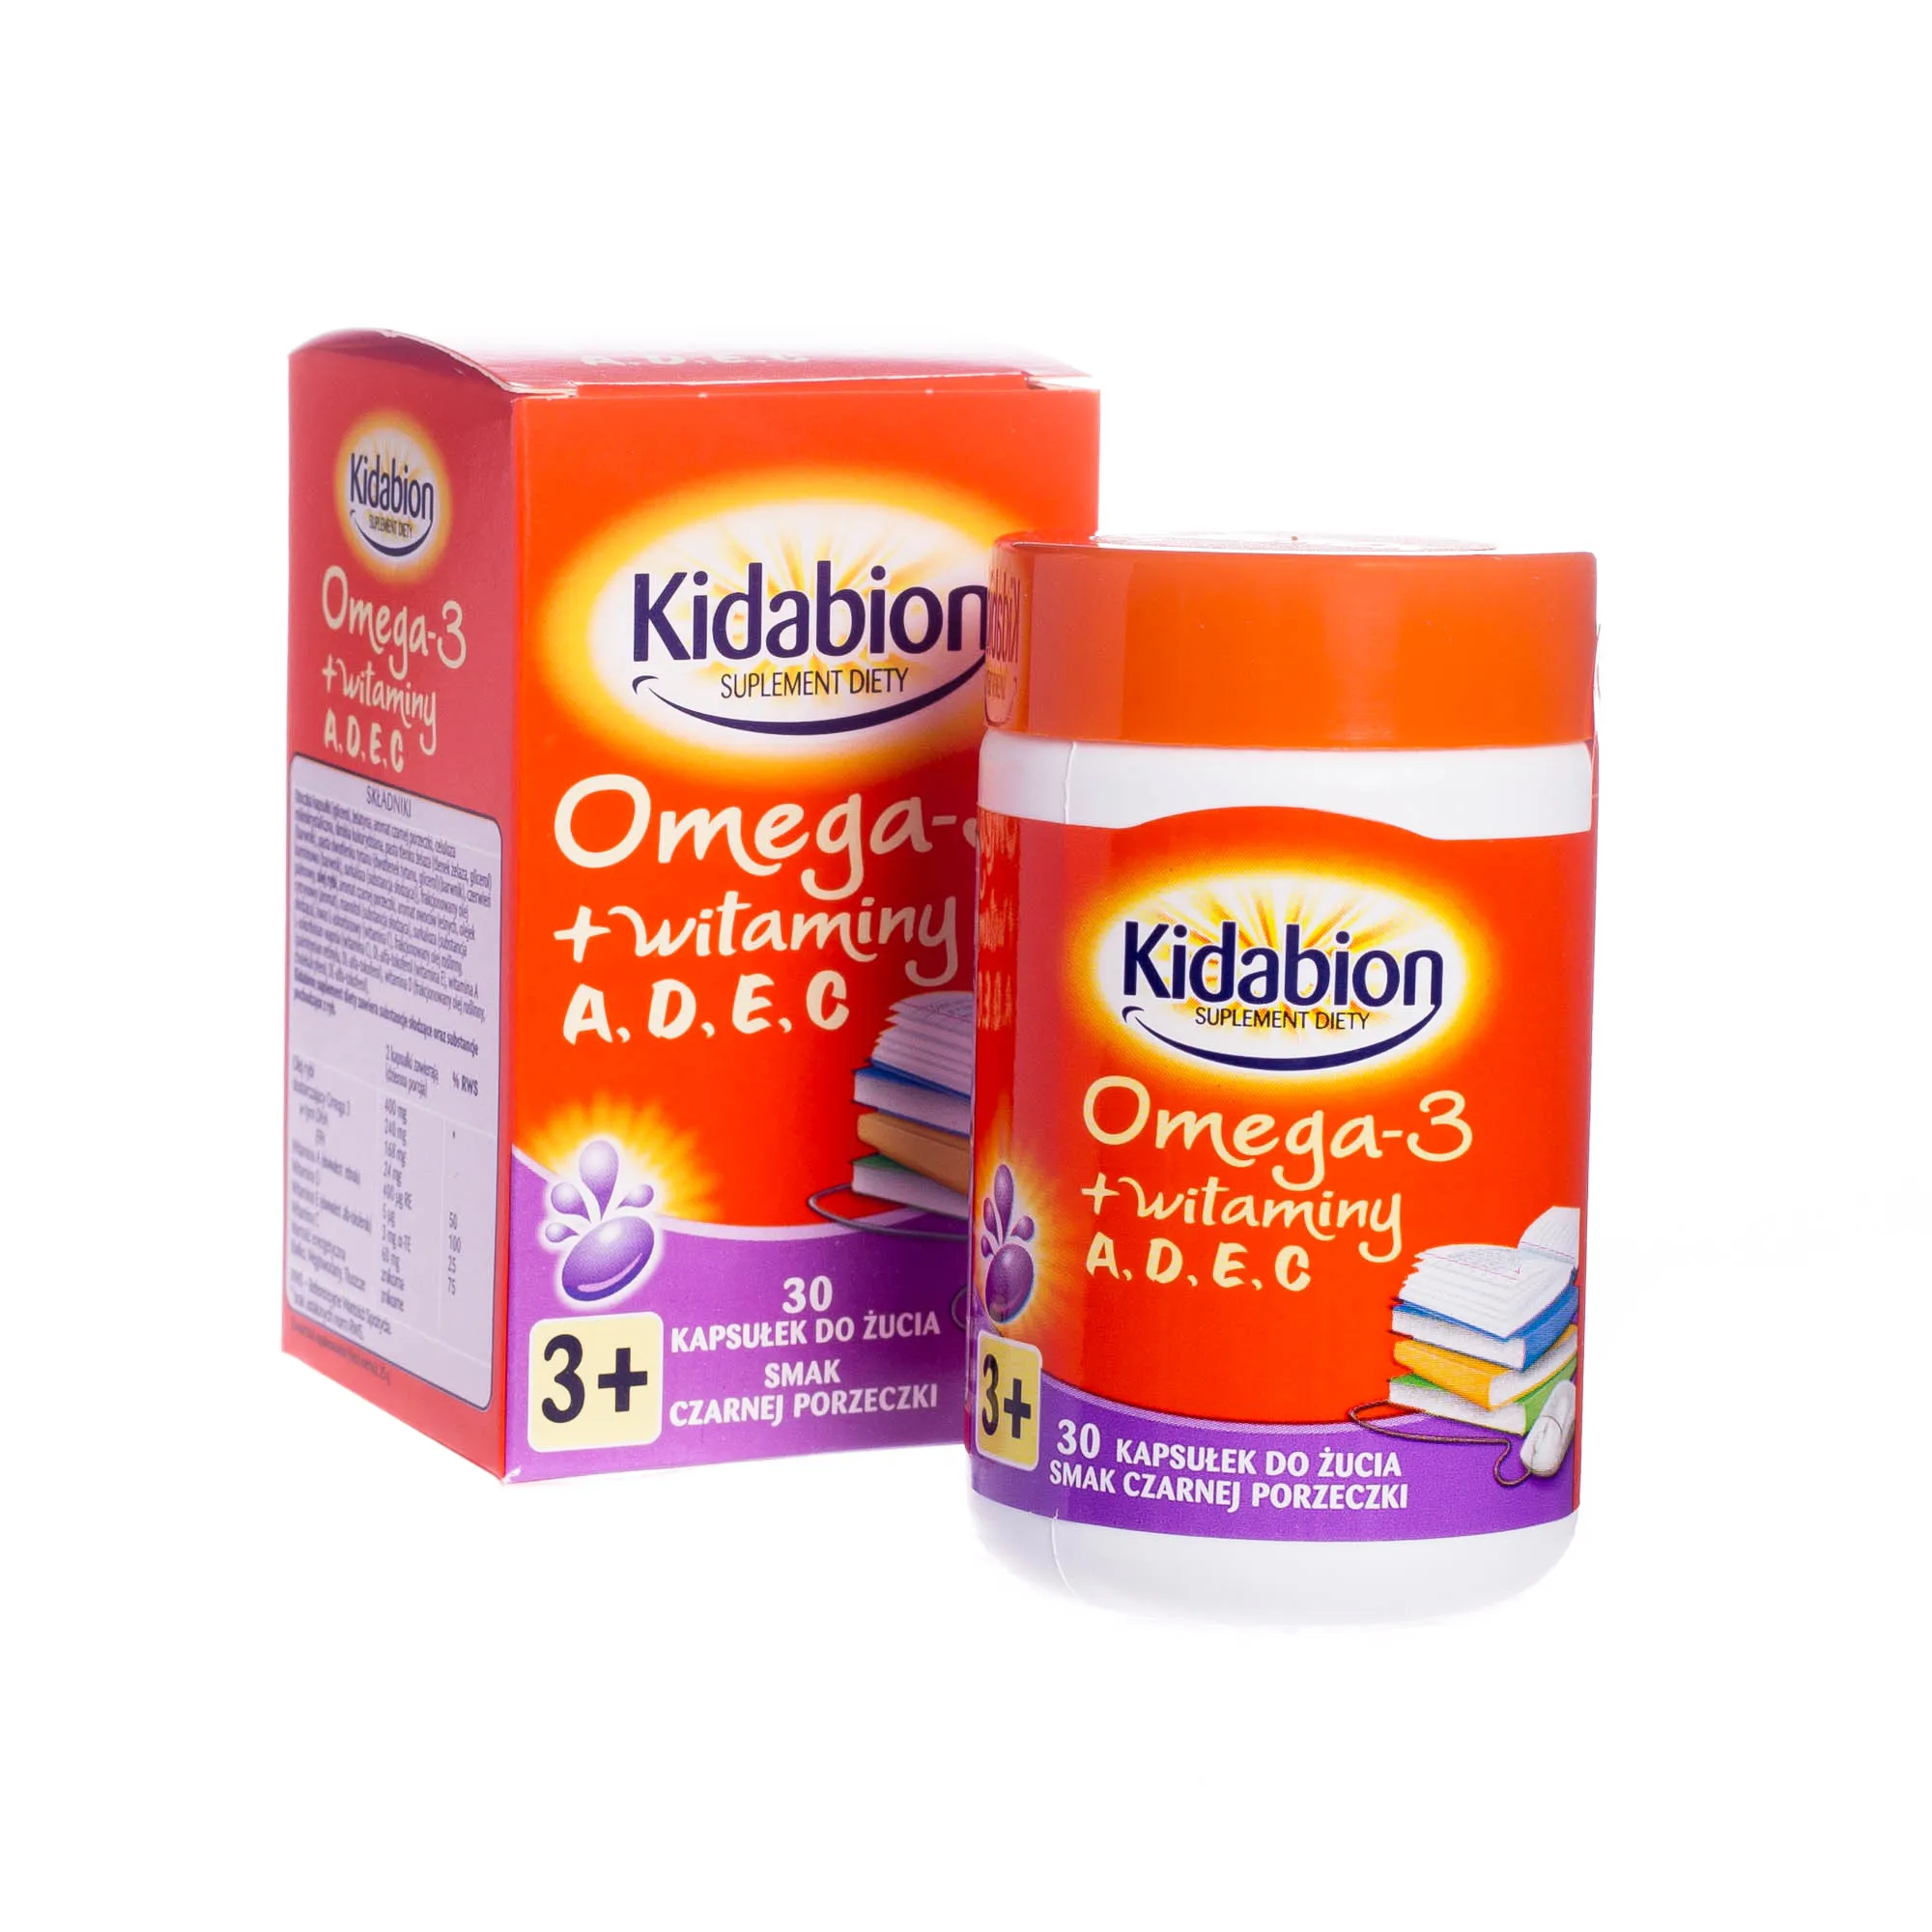 Kidabion o smaku czarnej porzeczki - suplement diety zawierający olej Omega-3 i wit. A,D,E,C